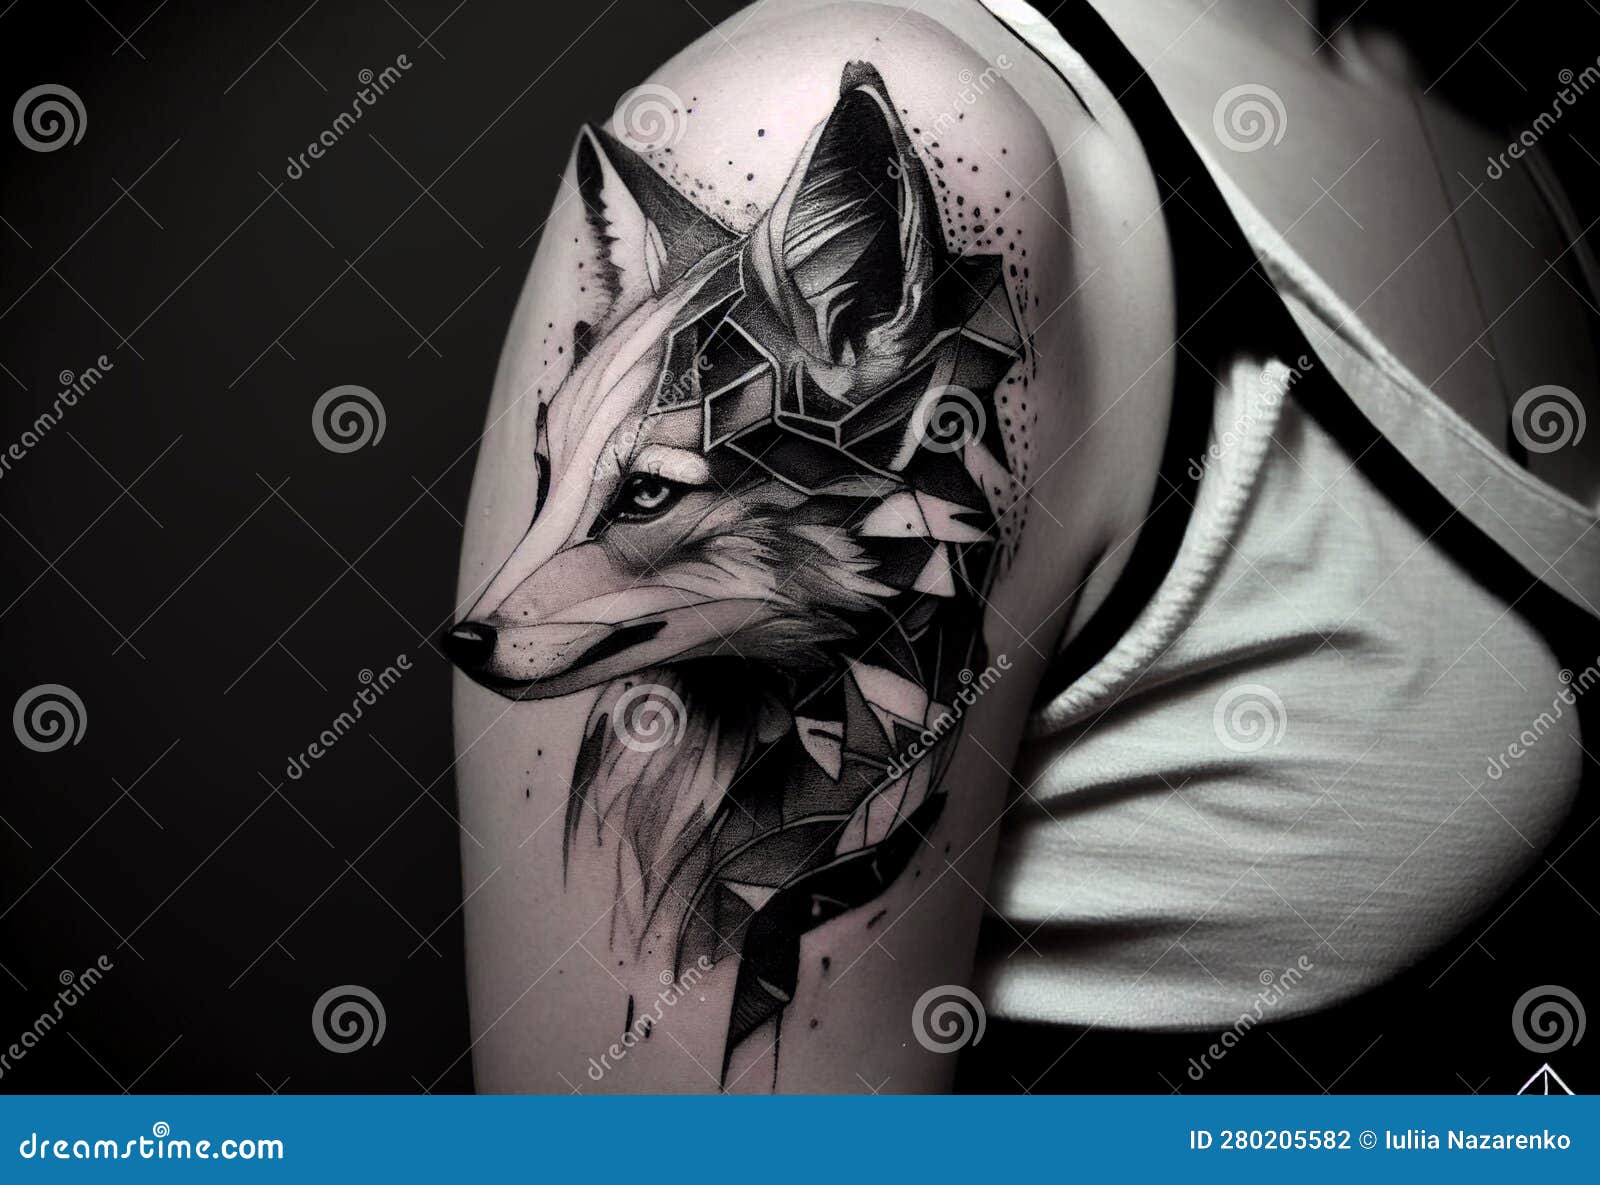 ArtStation - Foxhound